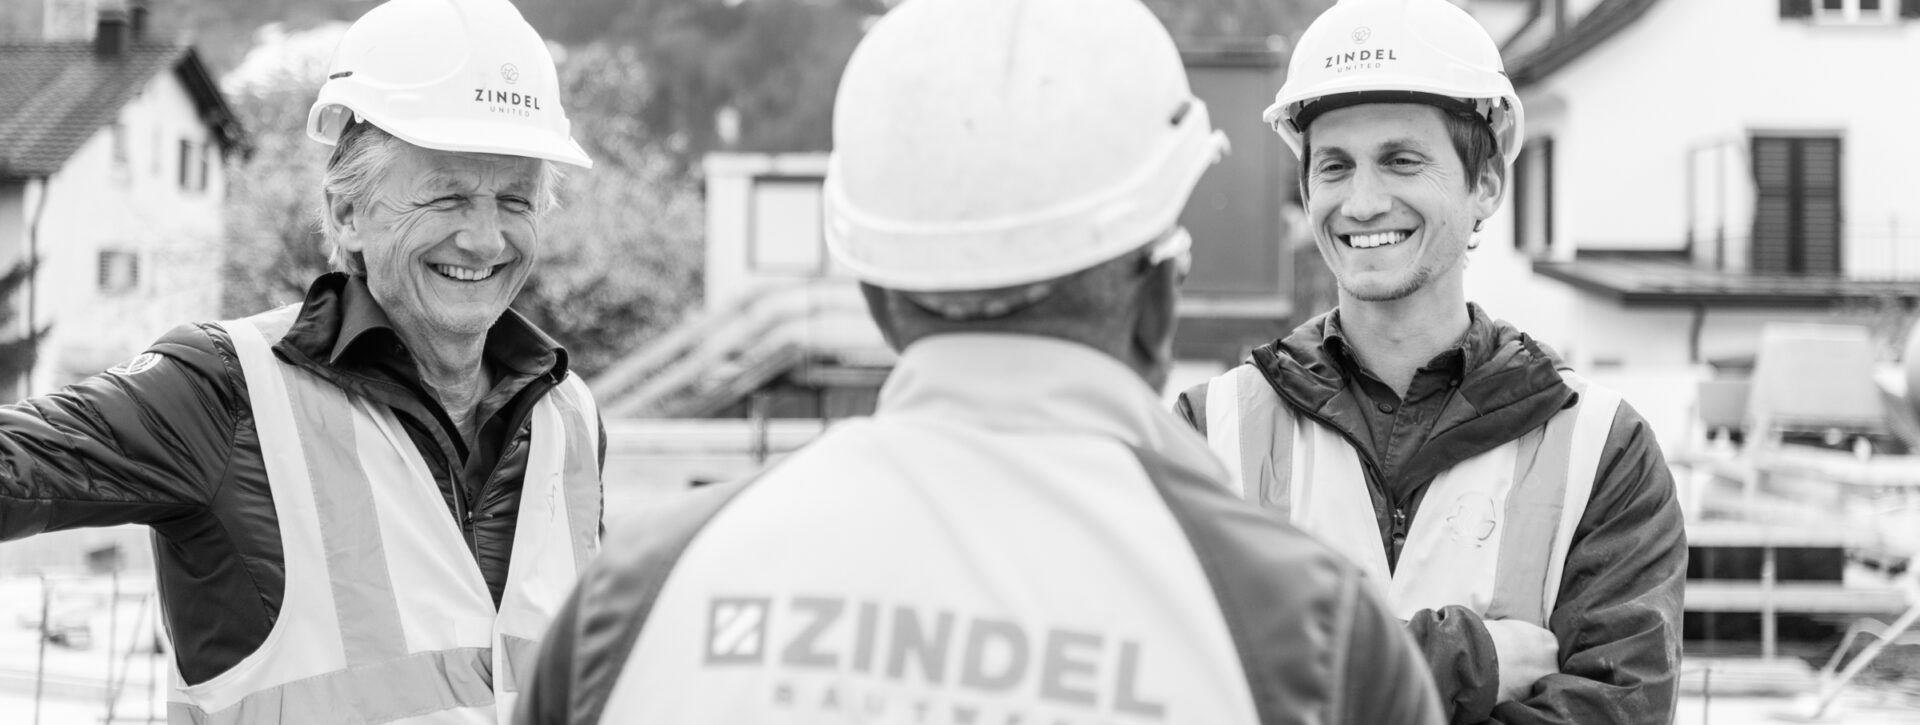 Andreas Zindel-Schnell, COO, zusammen mit Andreas Zindel, CEO auf einer Baustelle in Maienfeld, am 9. April 2021. Foto: Mattias Nutt